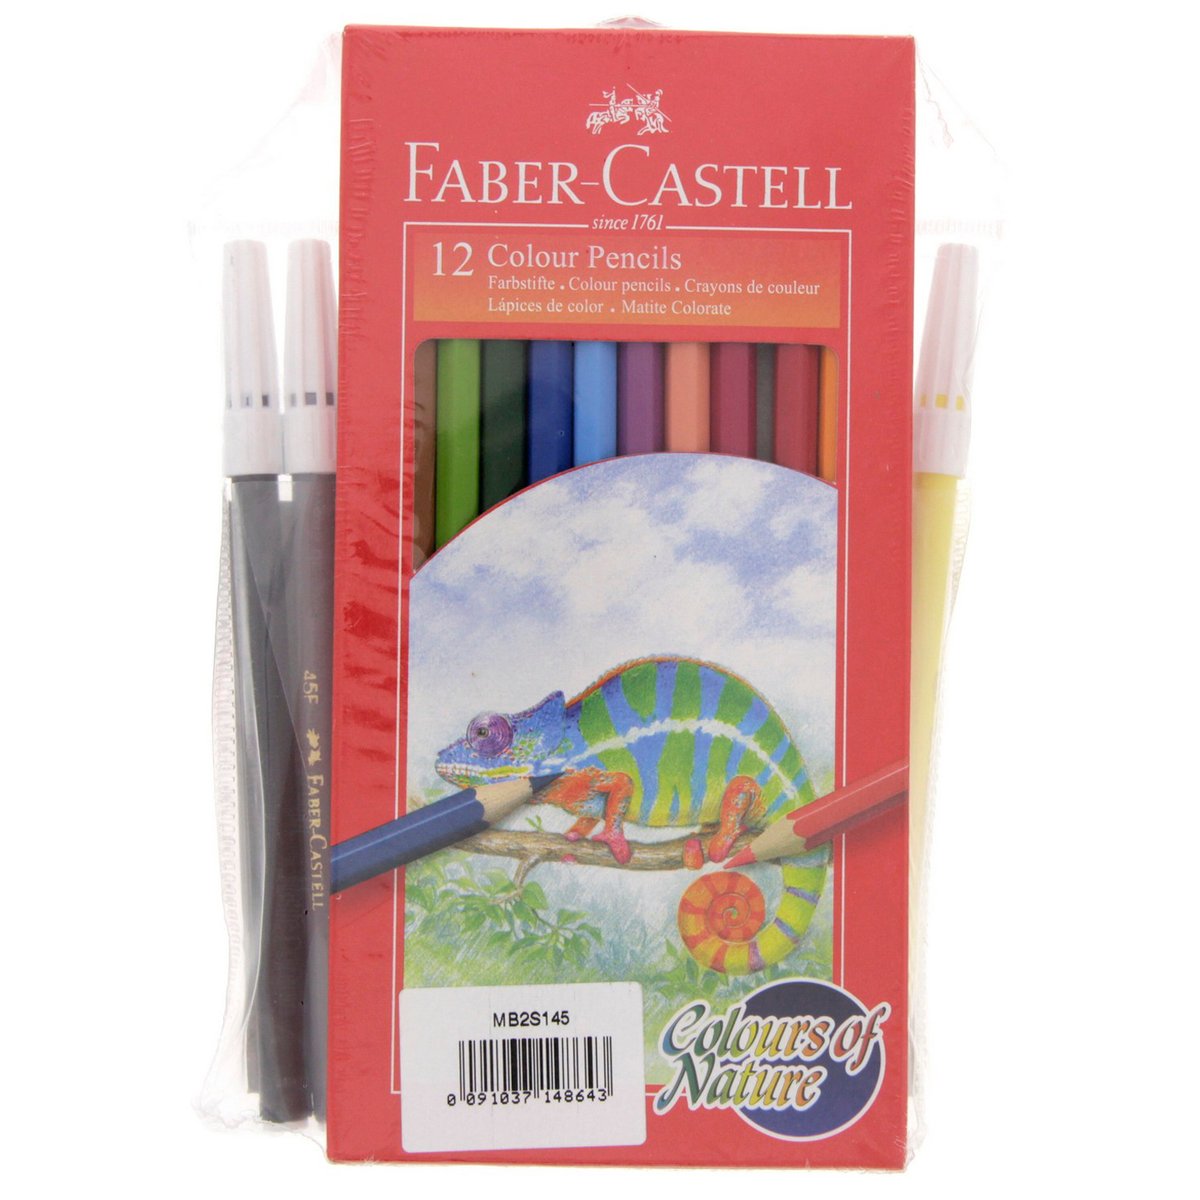 فايبر-كاستل ألوان خشبية 12 حبة + أقلام ألوان 12 حبة + ألوان شمعية 12 حبة